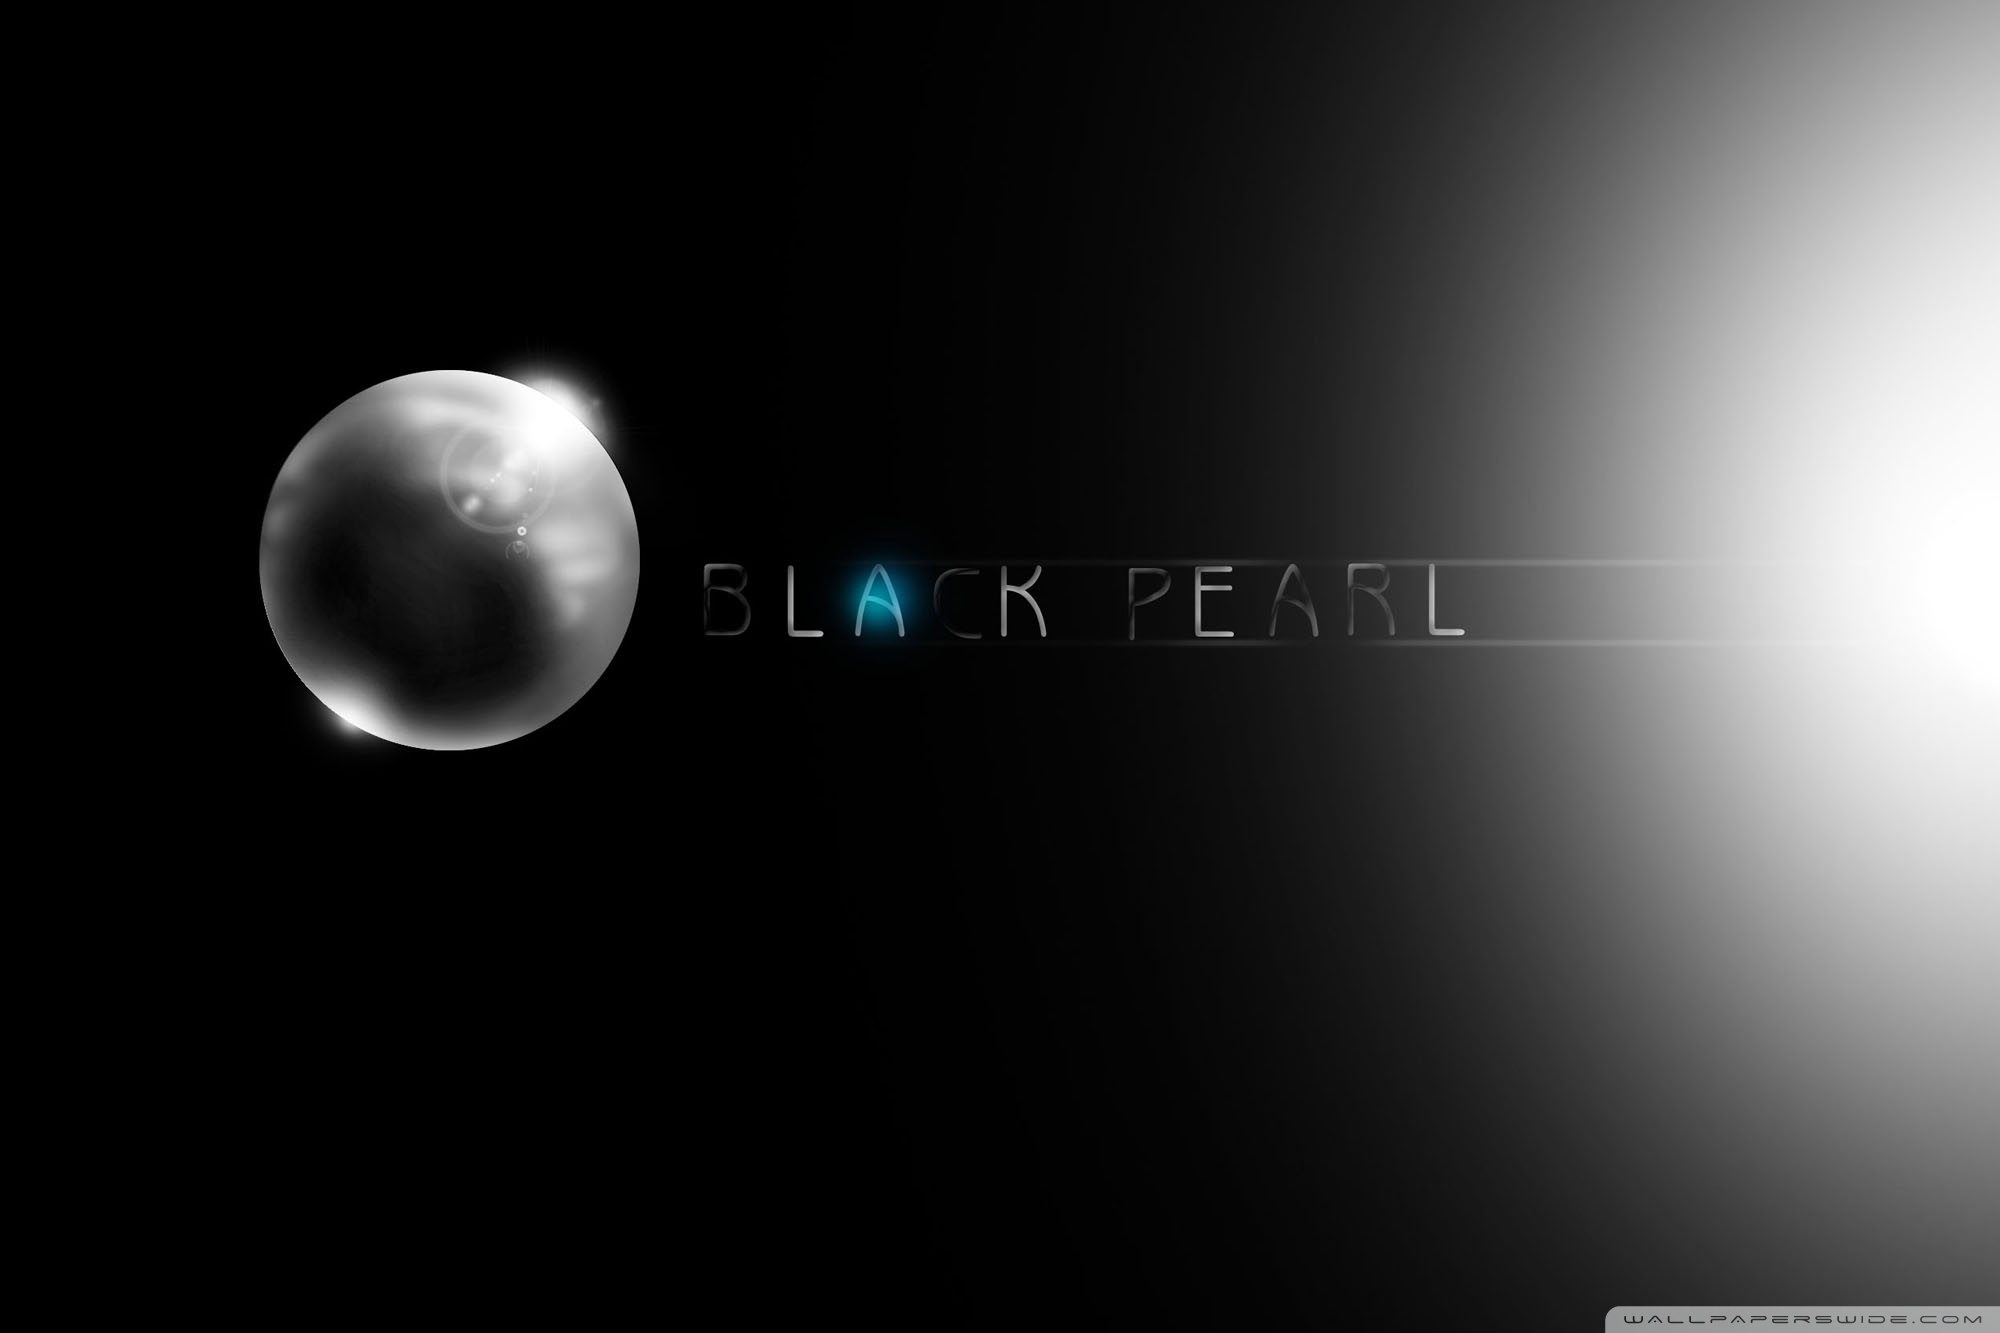 46+] The Black Pearl Wallpaper - WallpaperSafari